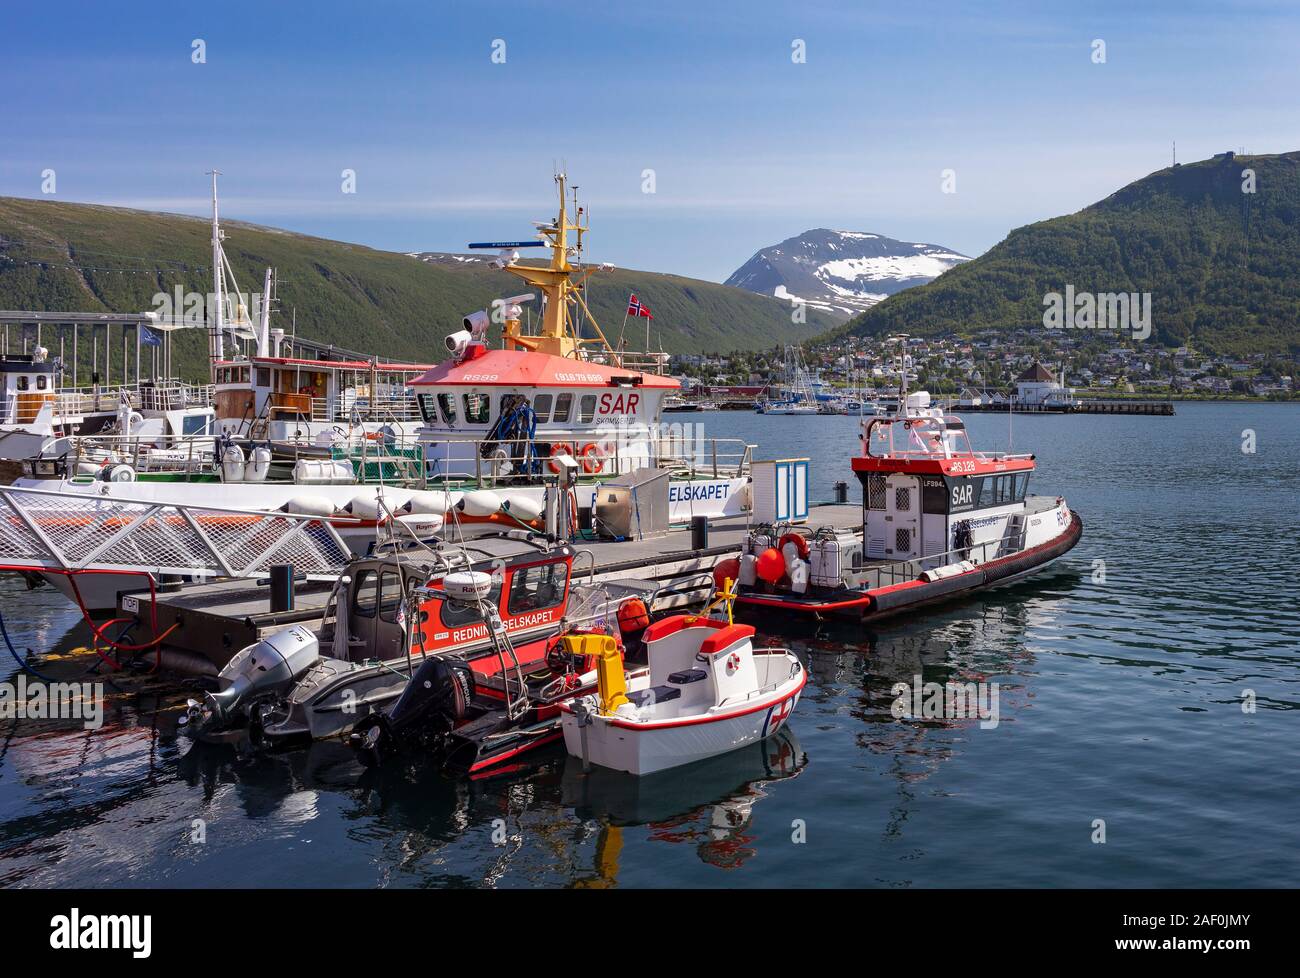 TROMSØ, Norvegia - Salvataggio barche ormeggiate in porto, azionato da Redningsselskapet, la società norvegese per il salvataggio in mare. Foto Stock